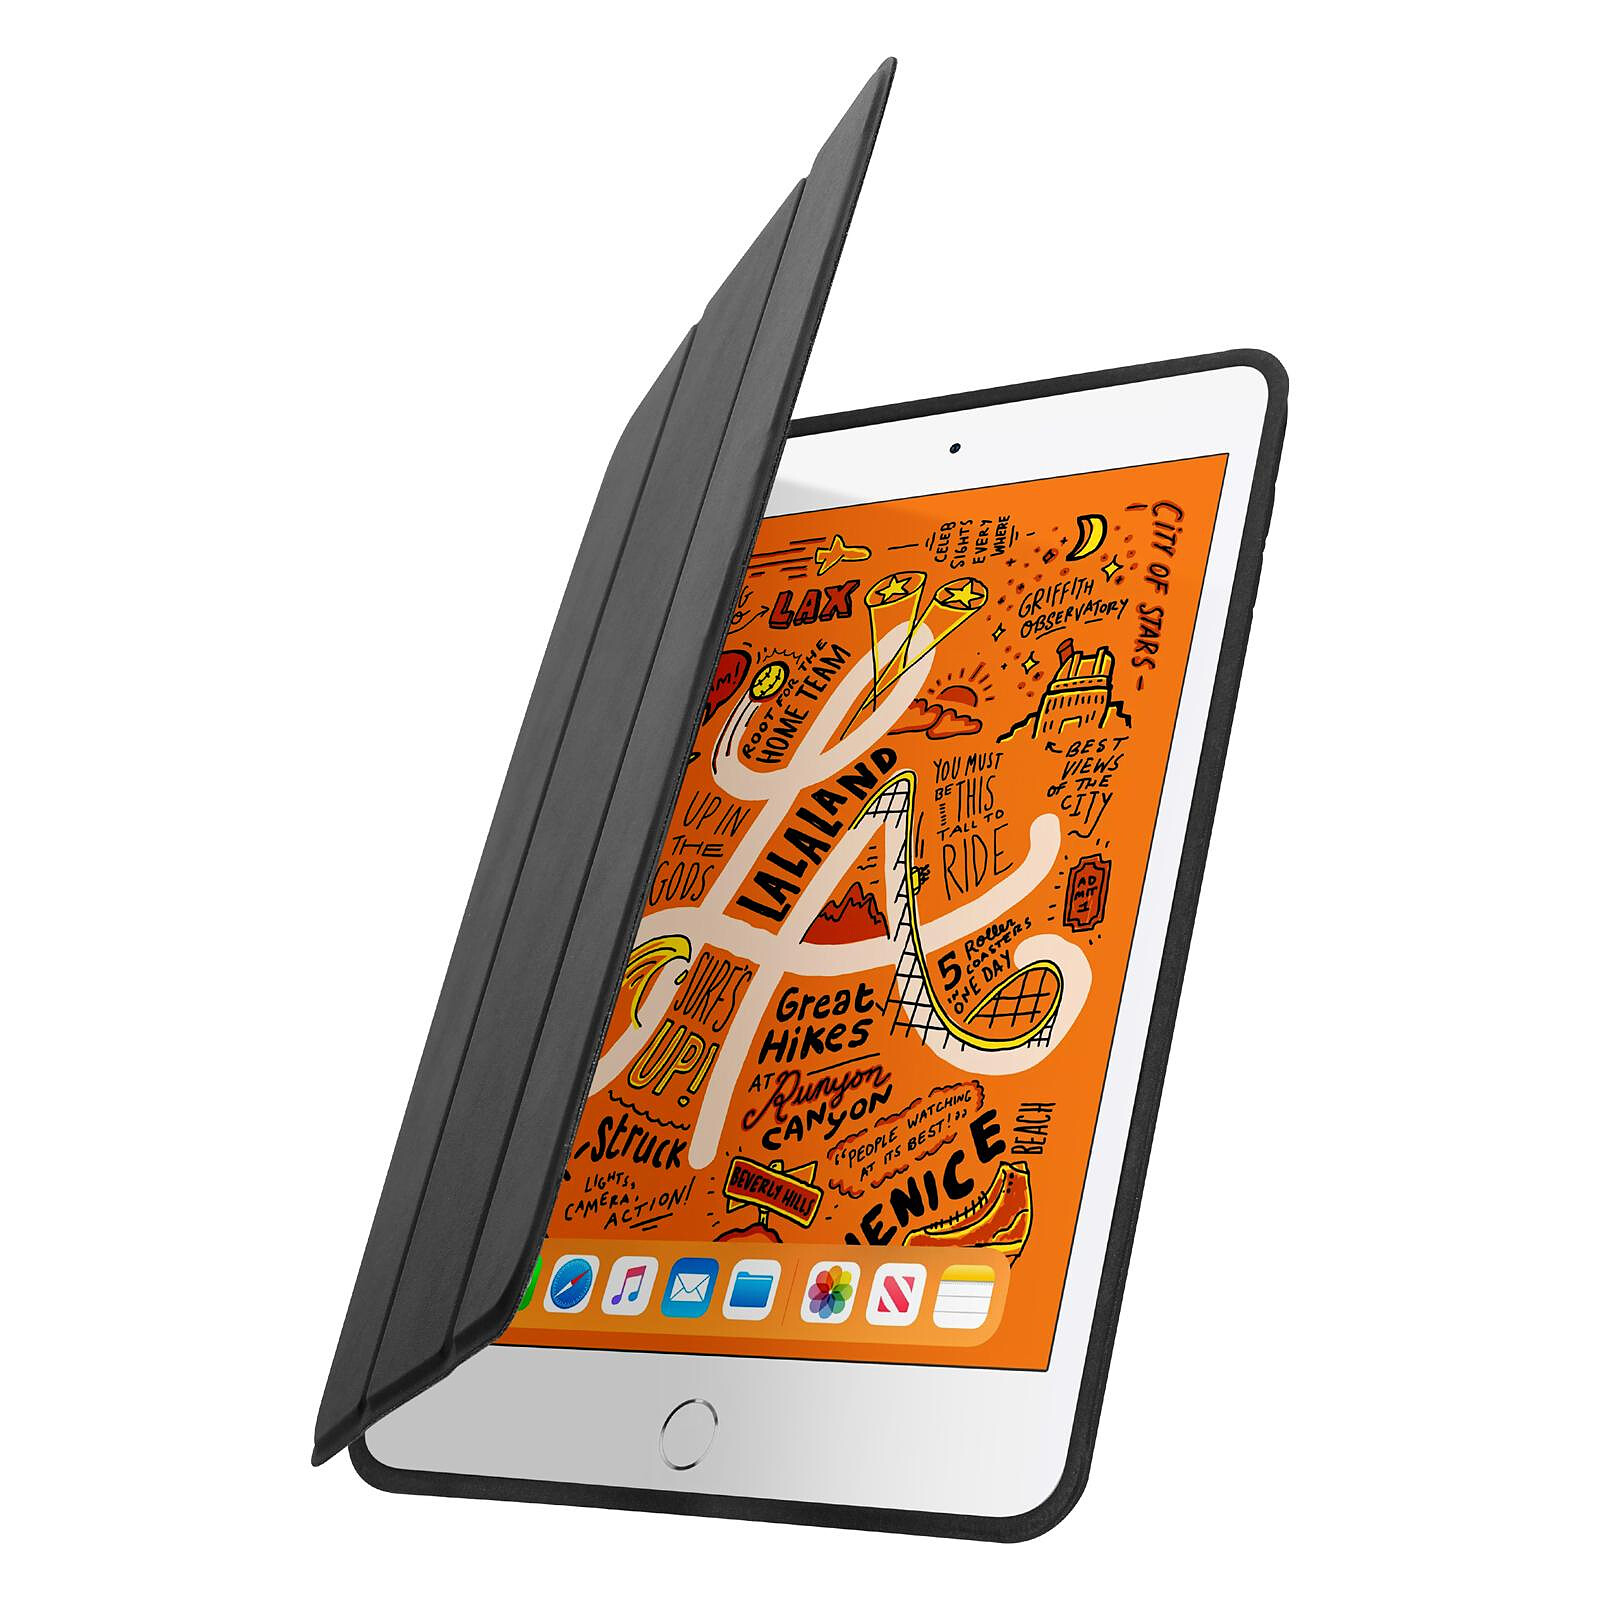 Coque iPad pro/Air 2019 avec rabat de protection - 3 couleurs - promotion